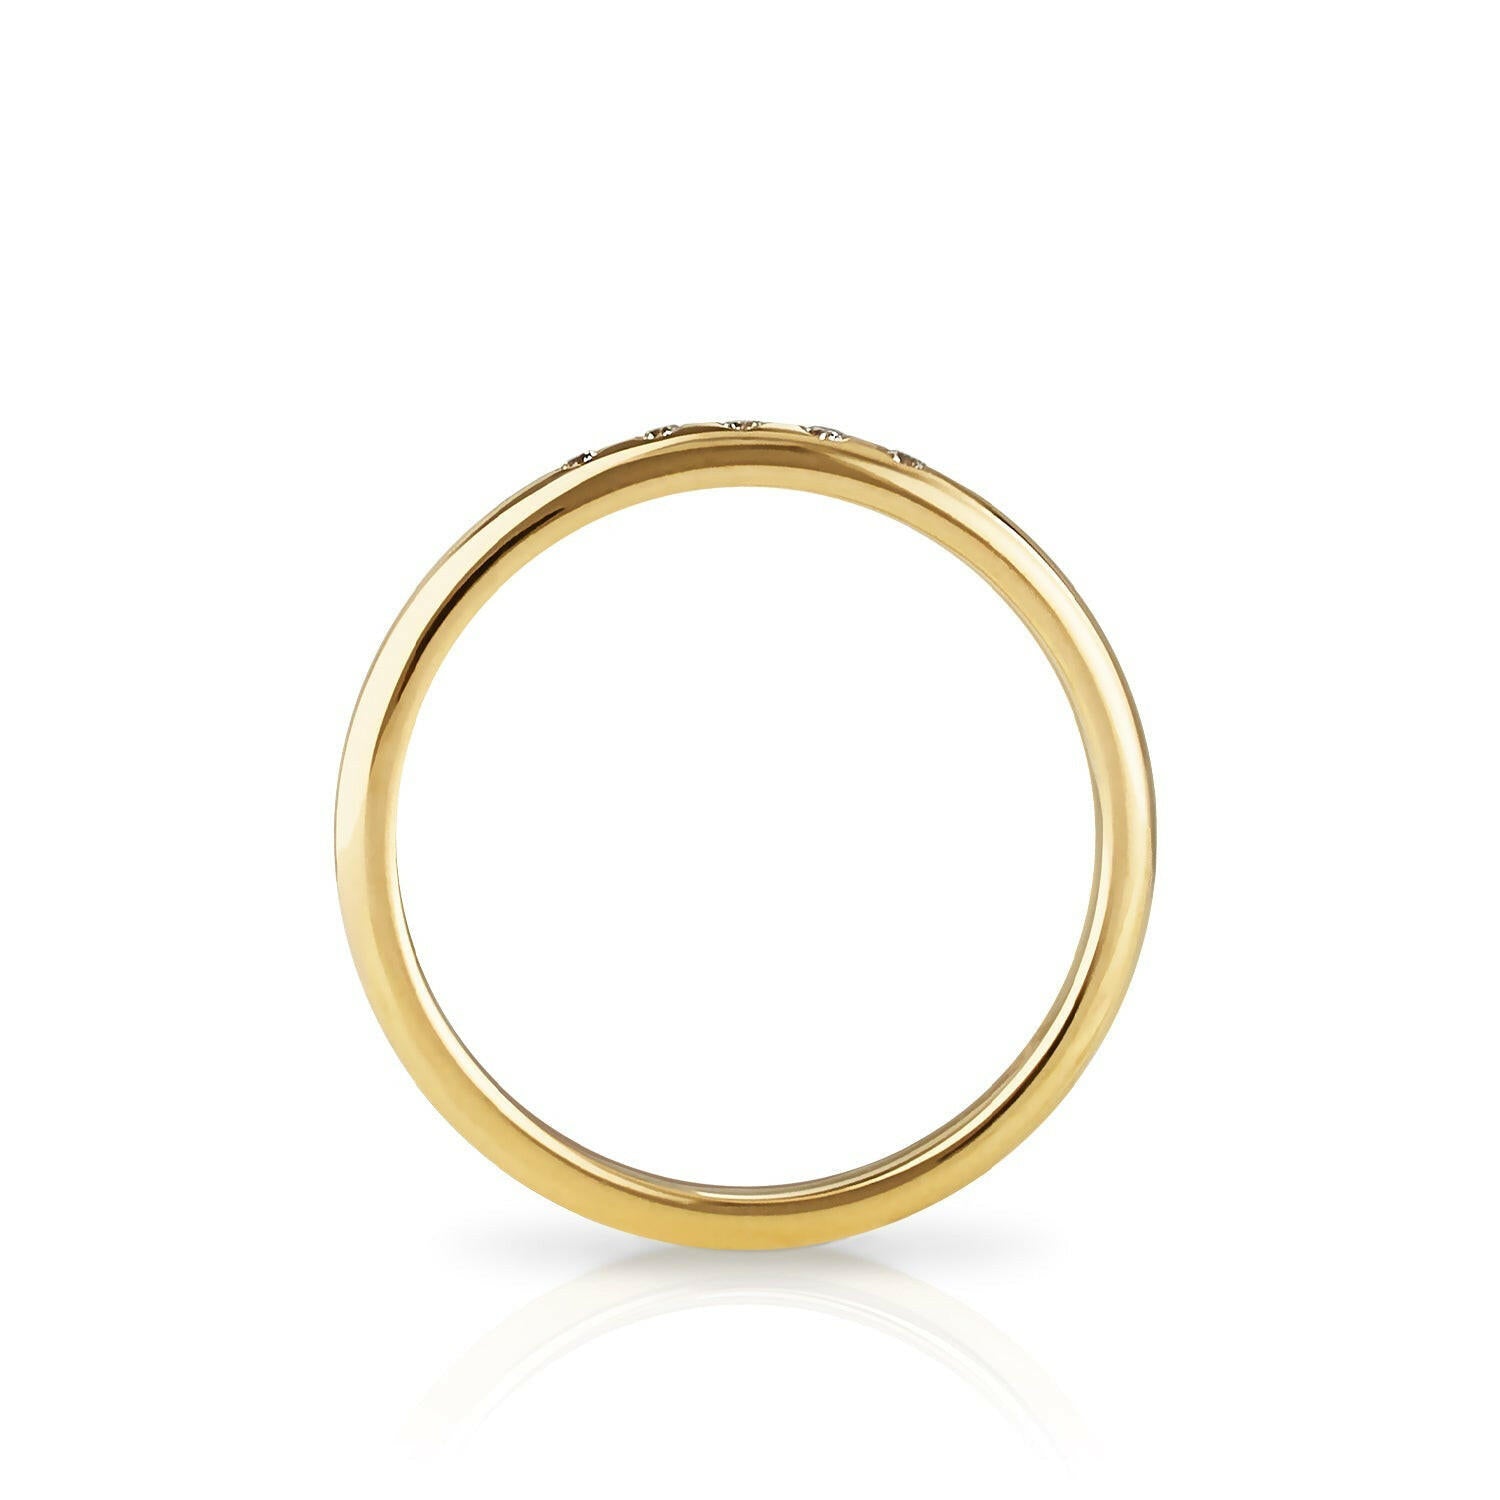 Zola Berlin personalisiert deinen Kim Ring mit labor Diamanten.